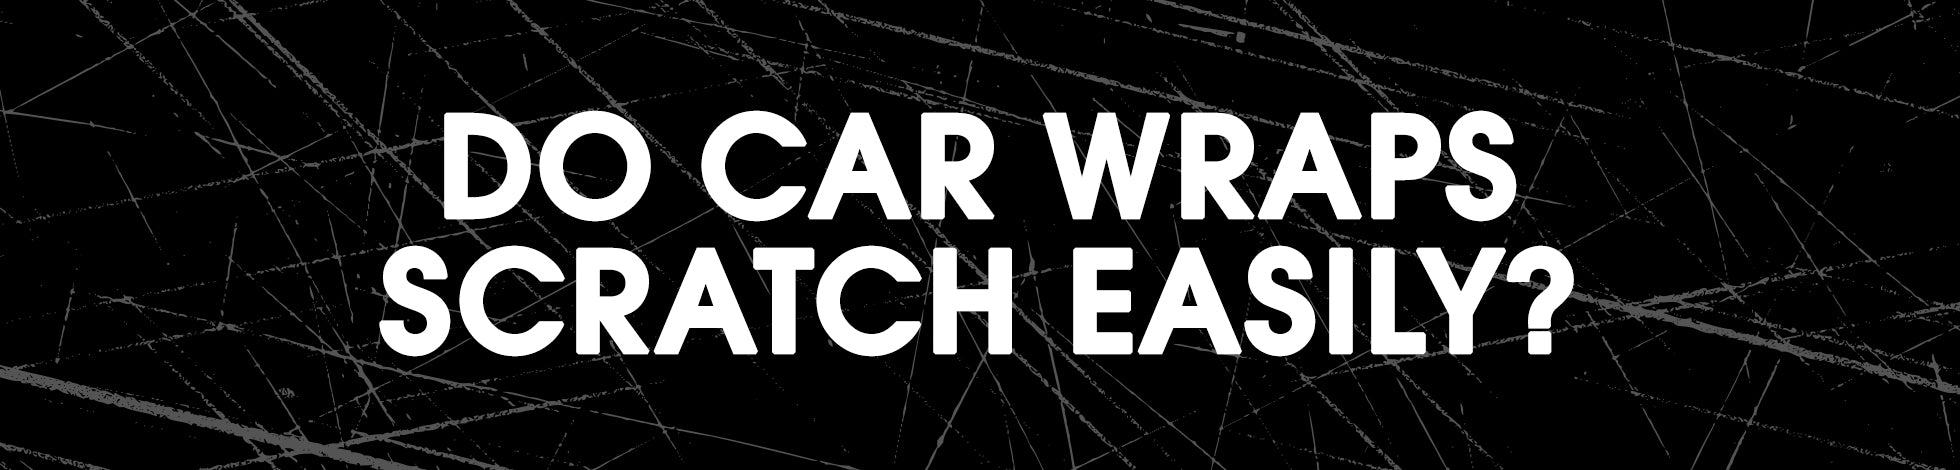 Do Car Wraps Scratch Easily?